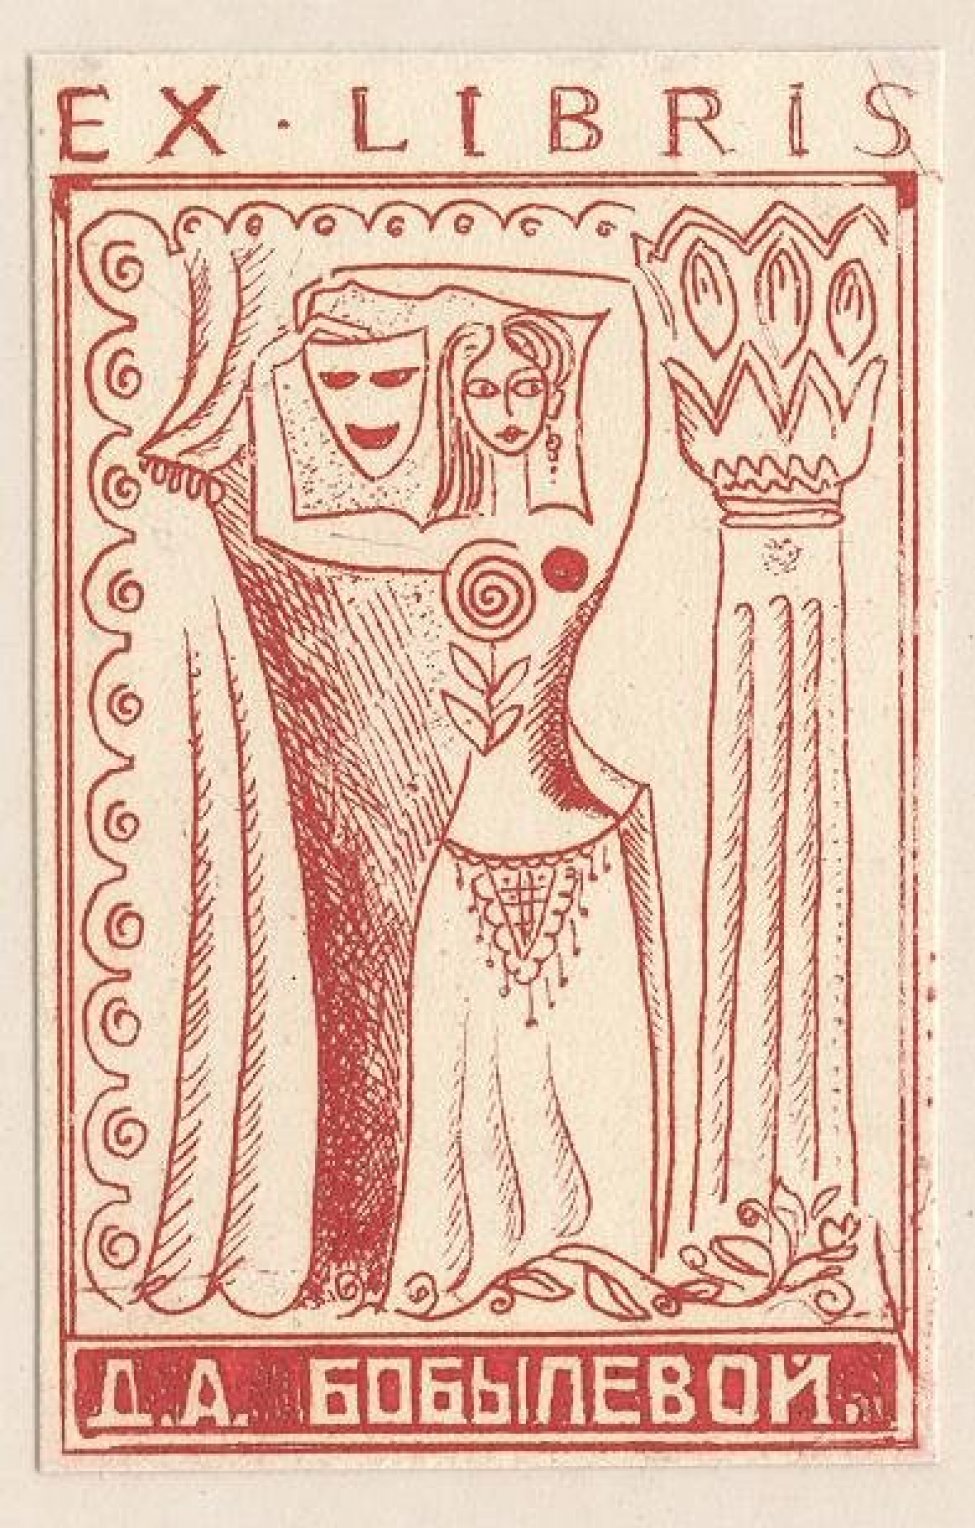 Изображена фигура женщины с театральной маской в руках; слева - занавес, справа - колонна. Над изображением надпись: EX LIBRIS; под изображением: Д.А. БОБЫЛЕВОЙ.